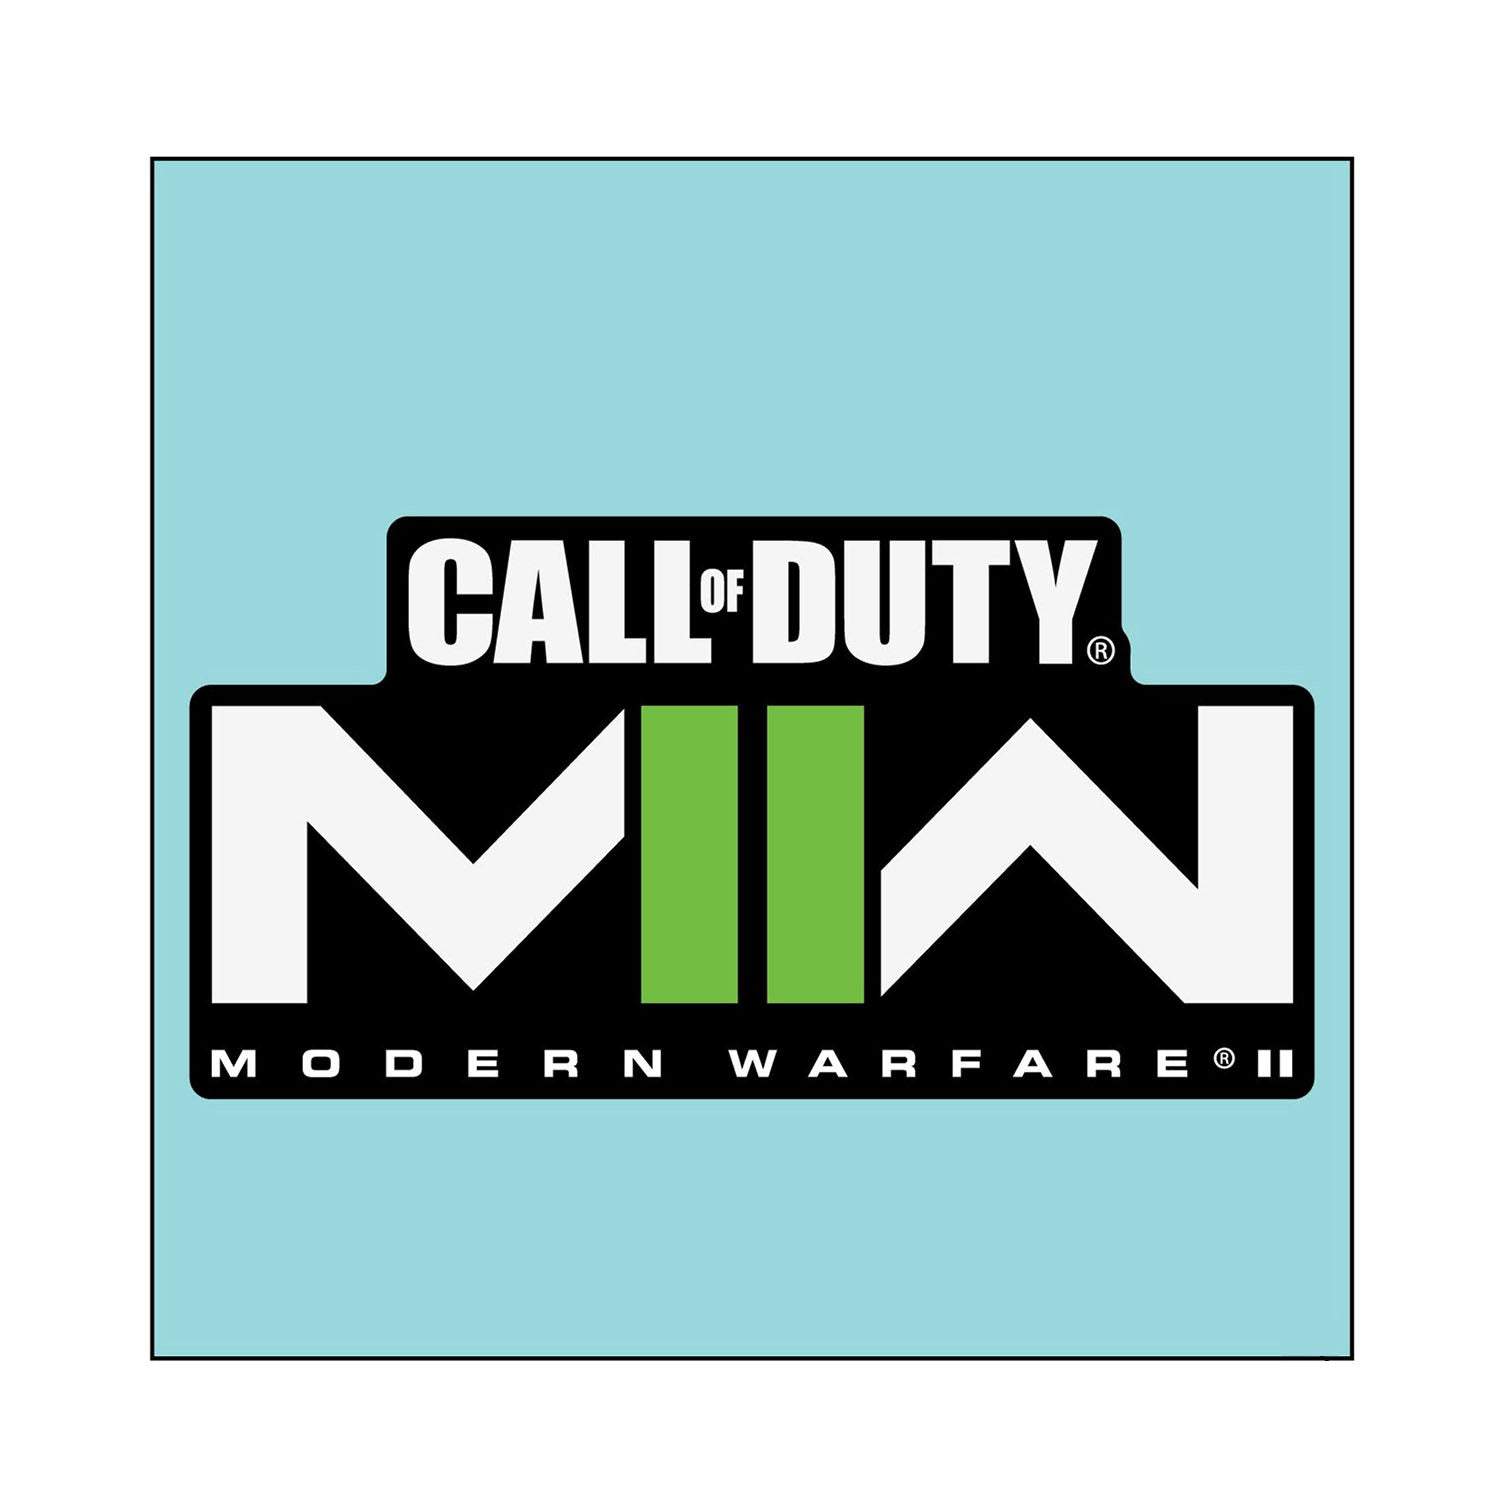 Call of Duty Modern Warfare 2 Logo